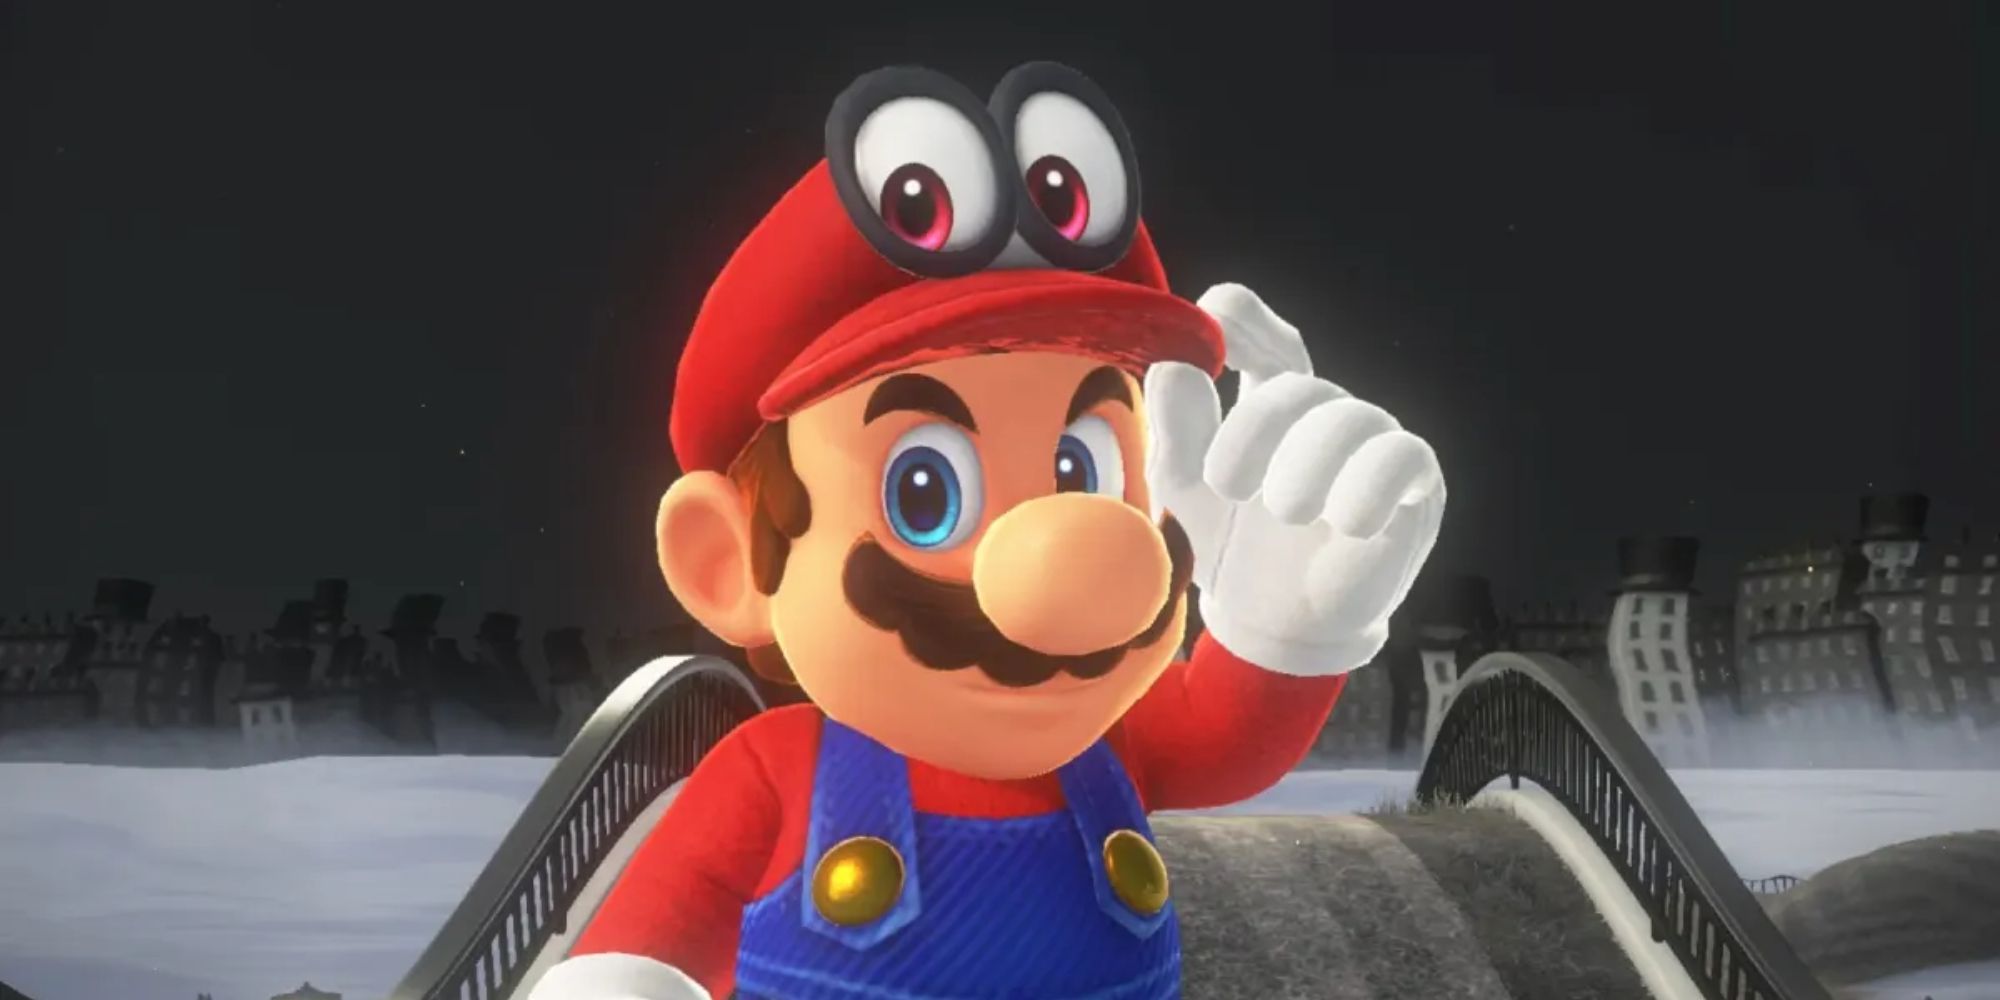 Mario wearing Cappy